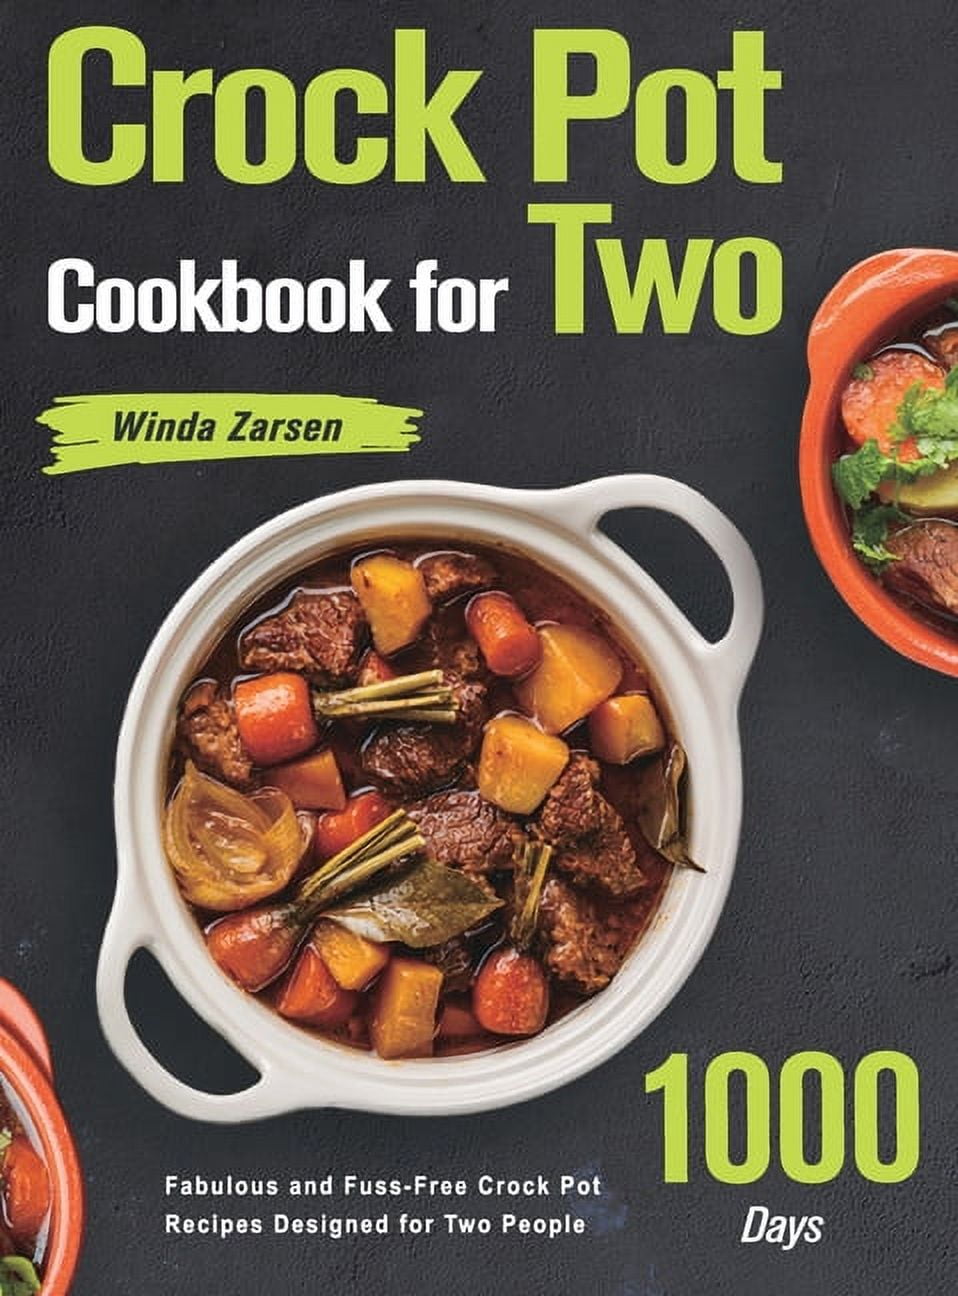 Crock Pot Recipes : 601 Easy and Healthy Crock Pot Recipes eBook by  Elizabeth Dora - EPUB Book